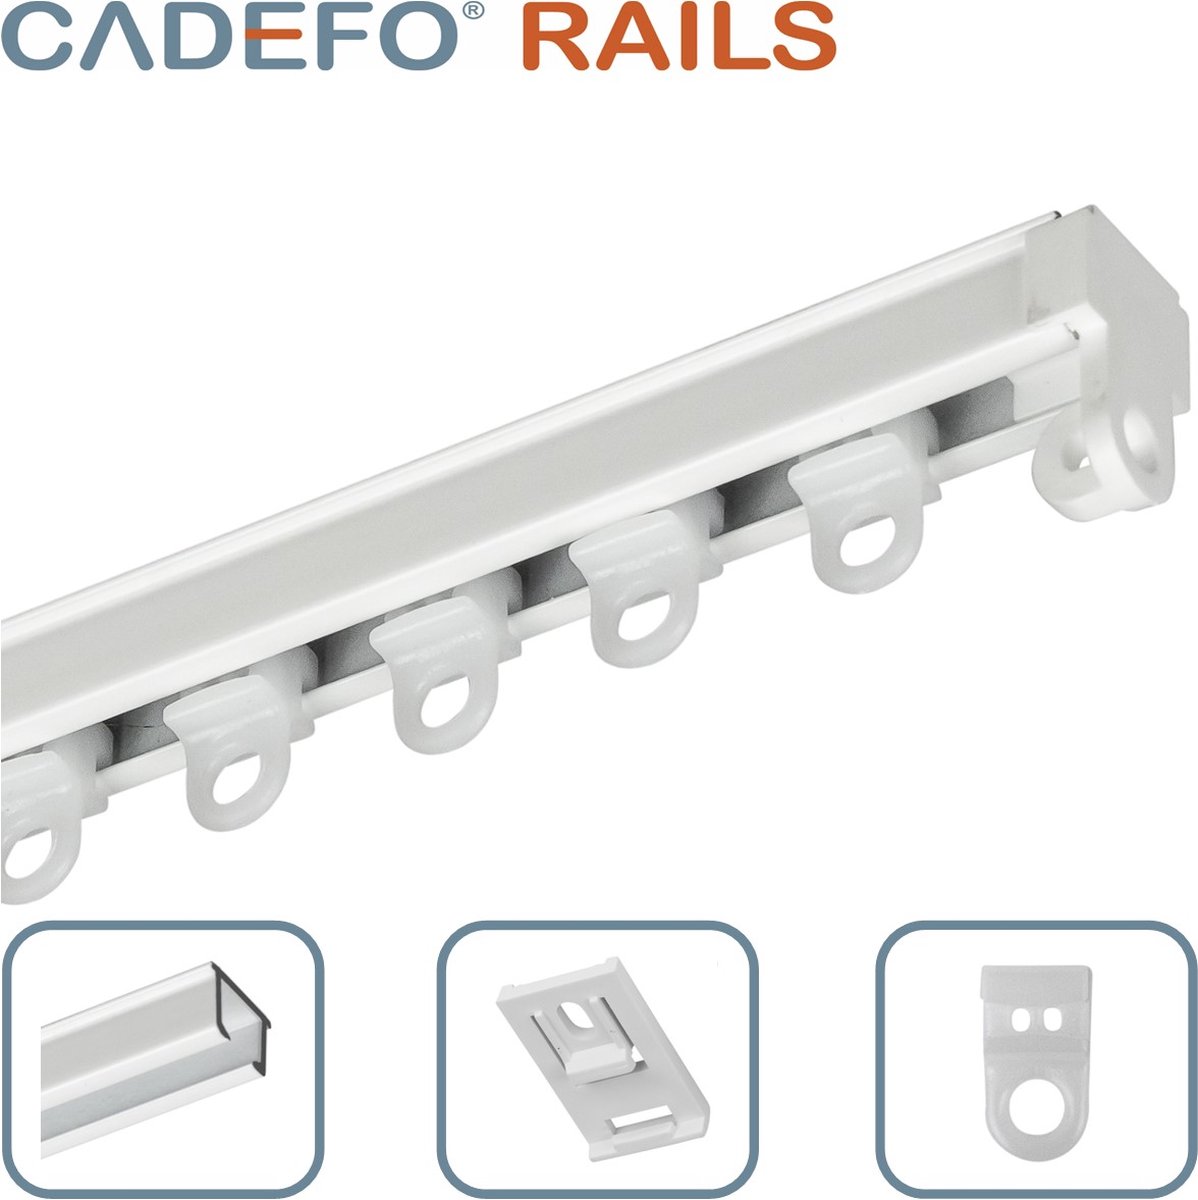 CADEFO RAILS (551 - 600 cm) Gordijnrails - Compleet op maat! - UIT 1 STUK - Leverbaar tot 6 meter - Plafondbevestiging - Lengte 590 cm